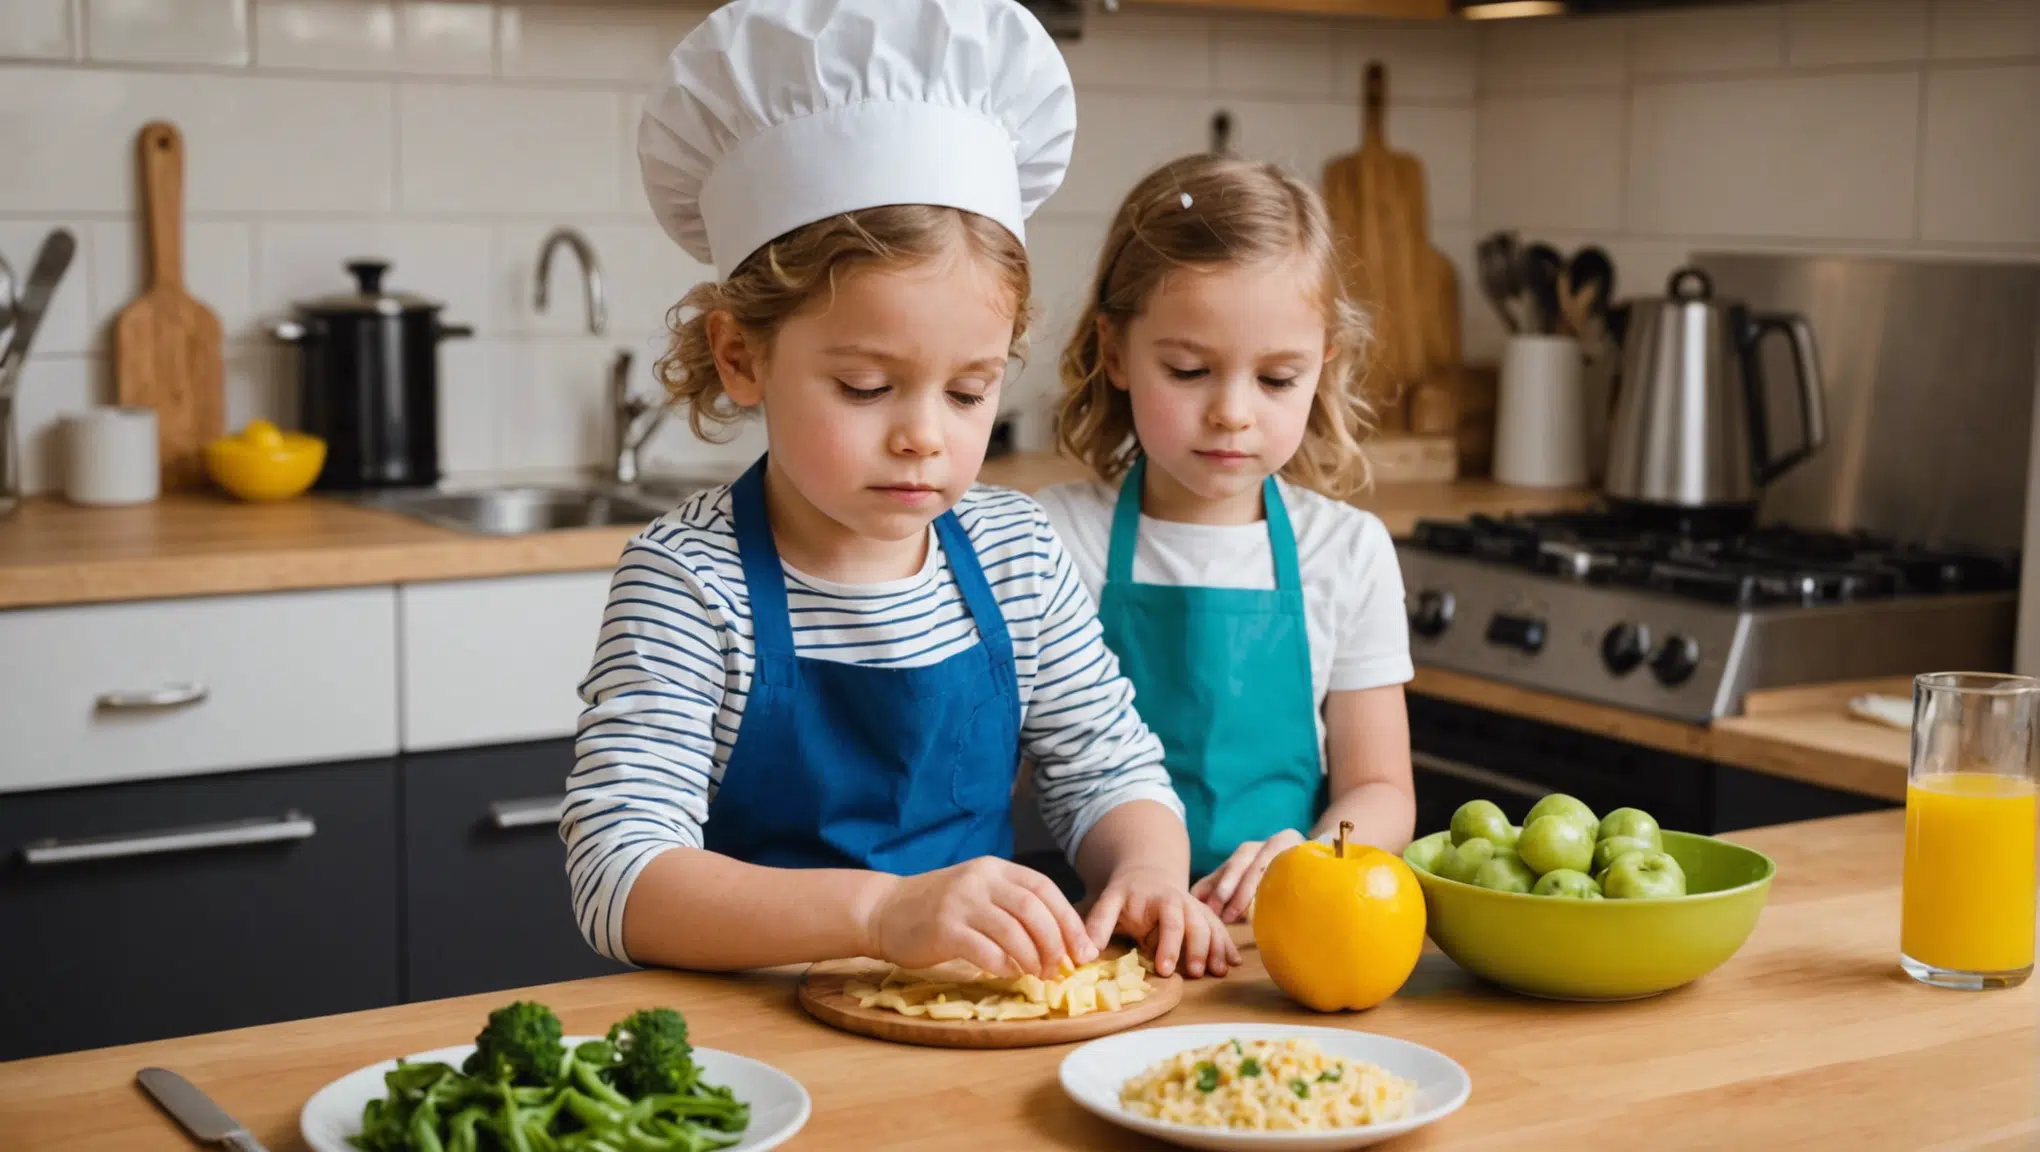 découvrez des astuces et des activités ludiques pour initier les enfants à la cuisine et éveiller leur curiosité avec plaisir et créativité.